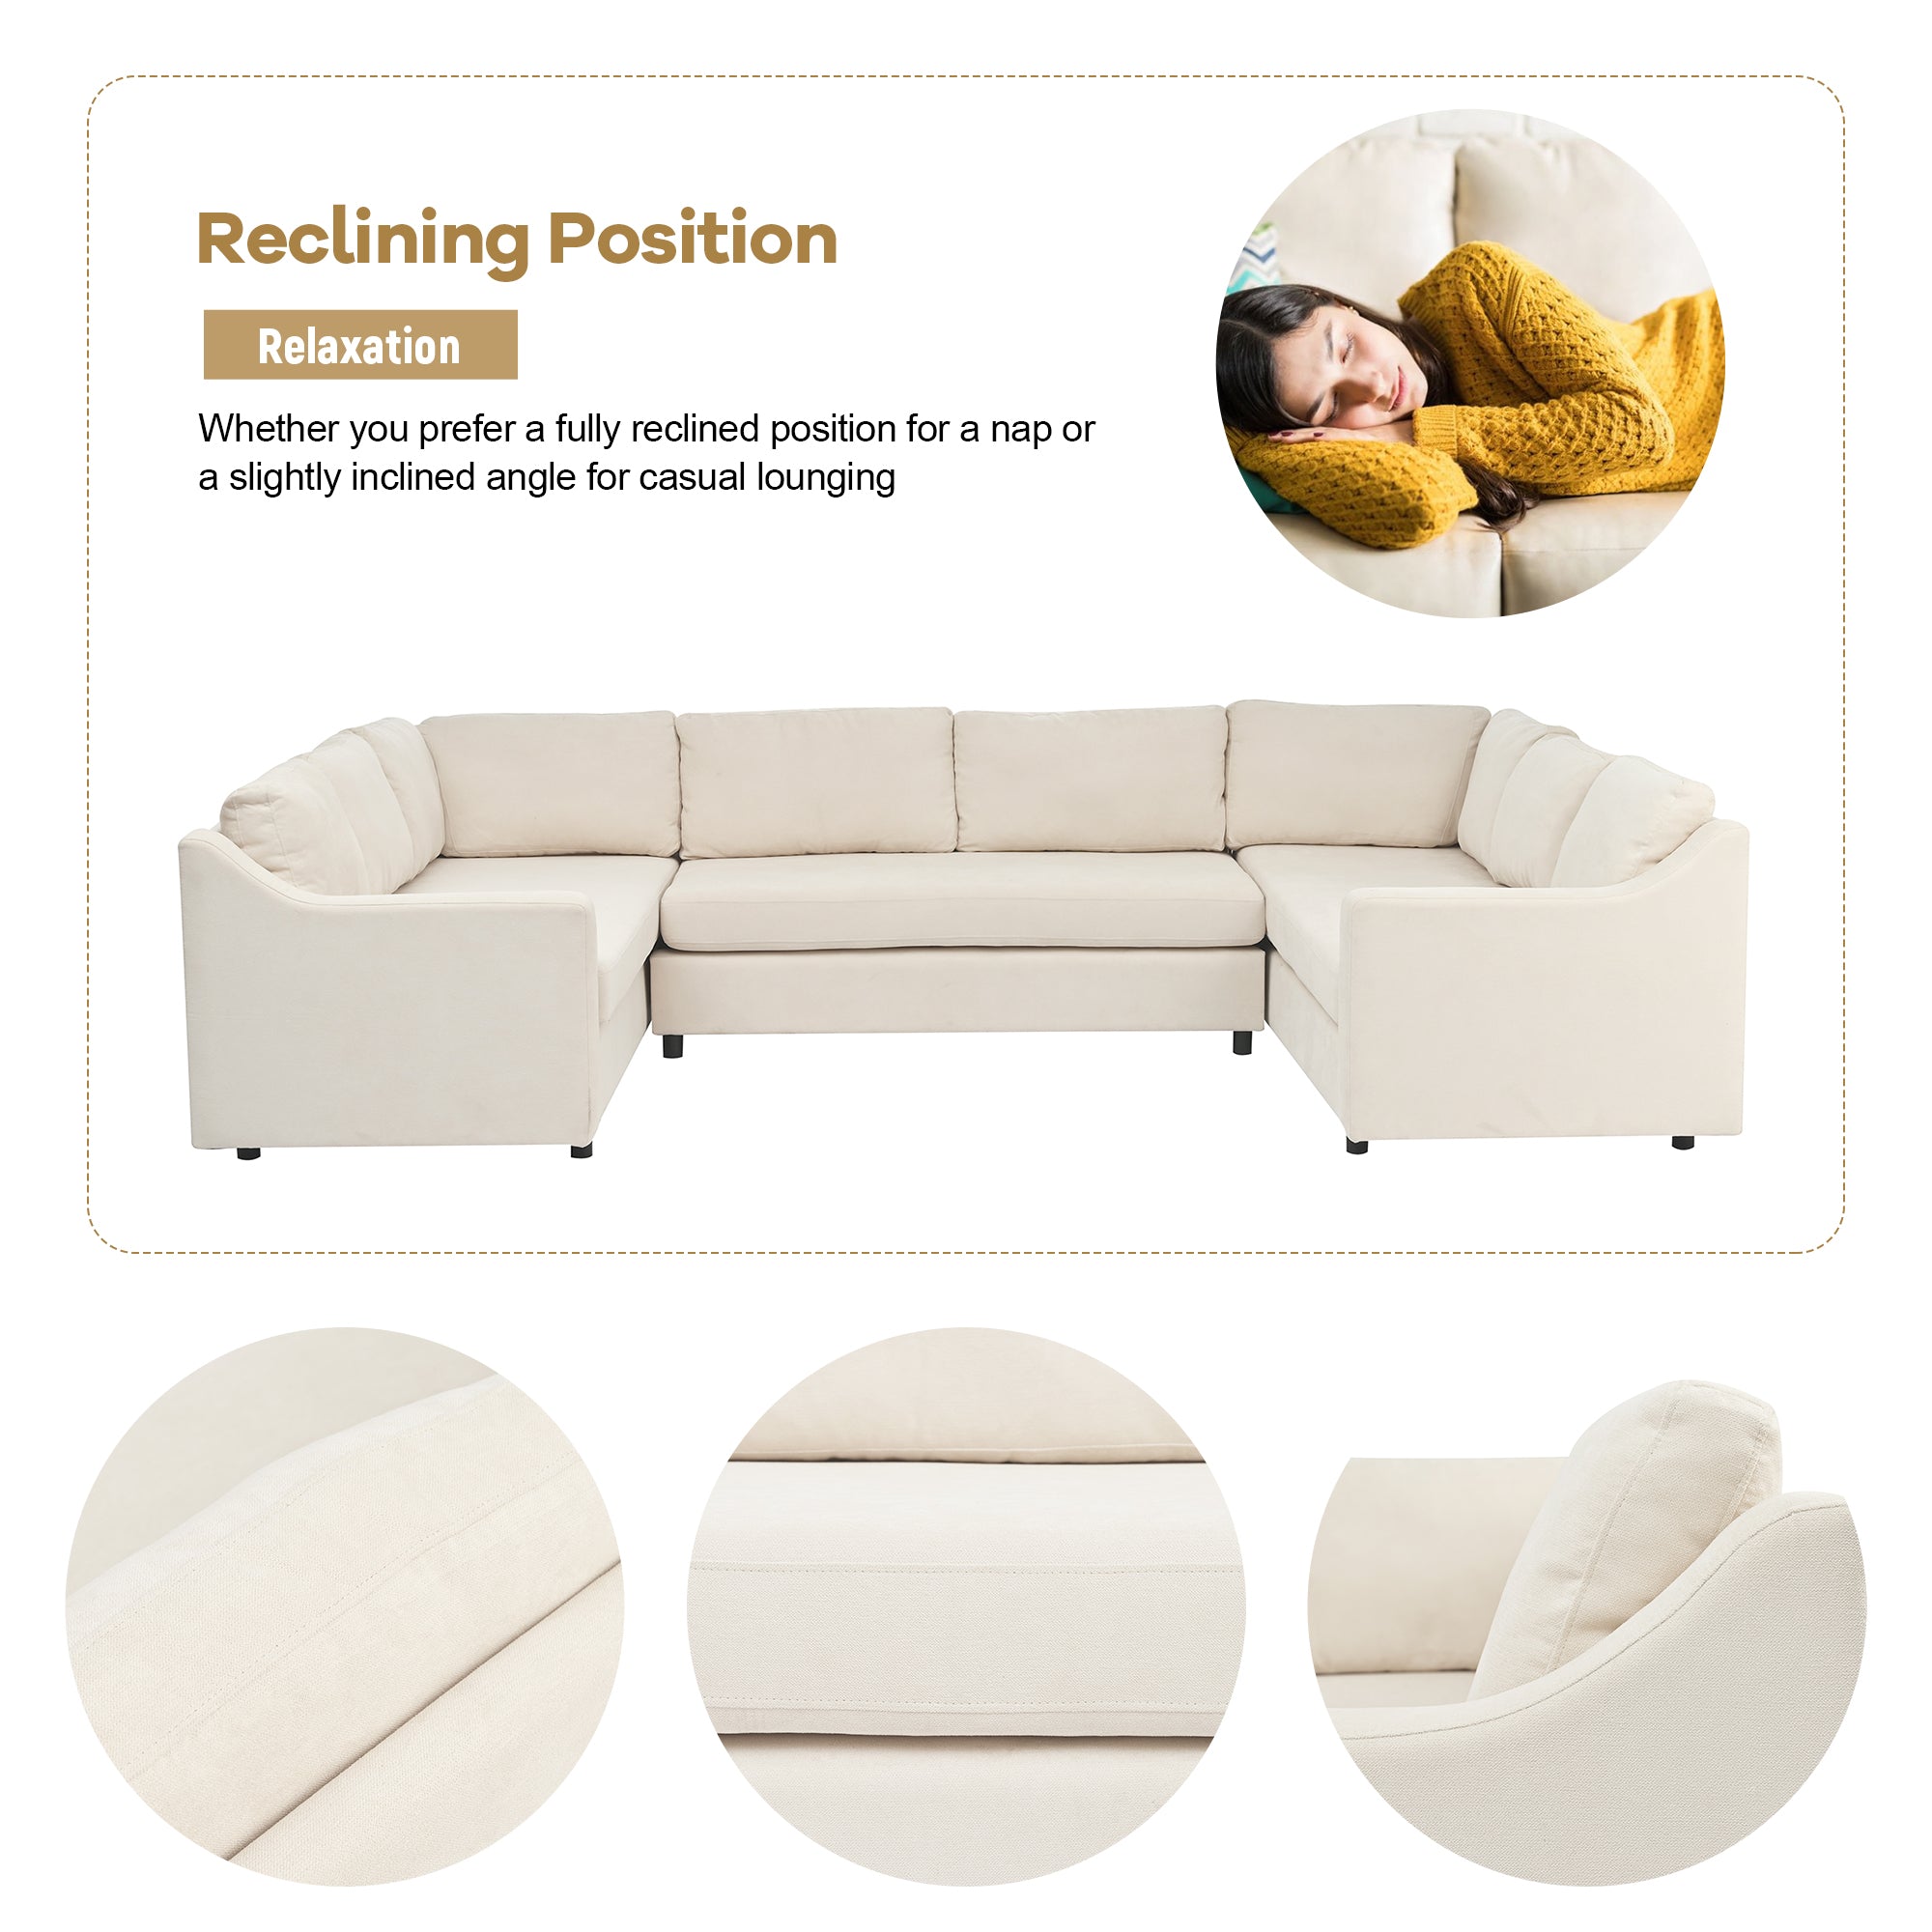 U-Shaped Large Sectional Sofa